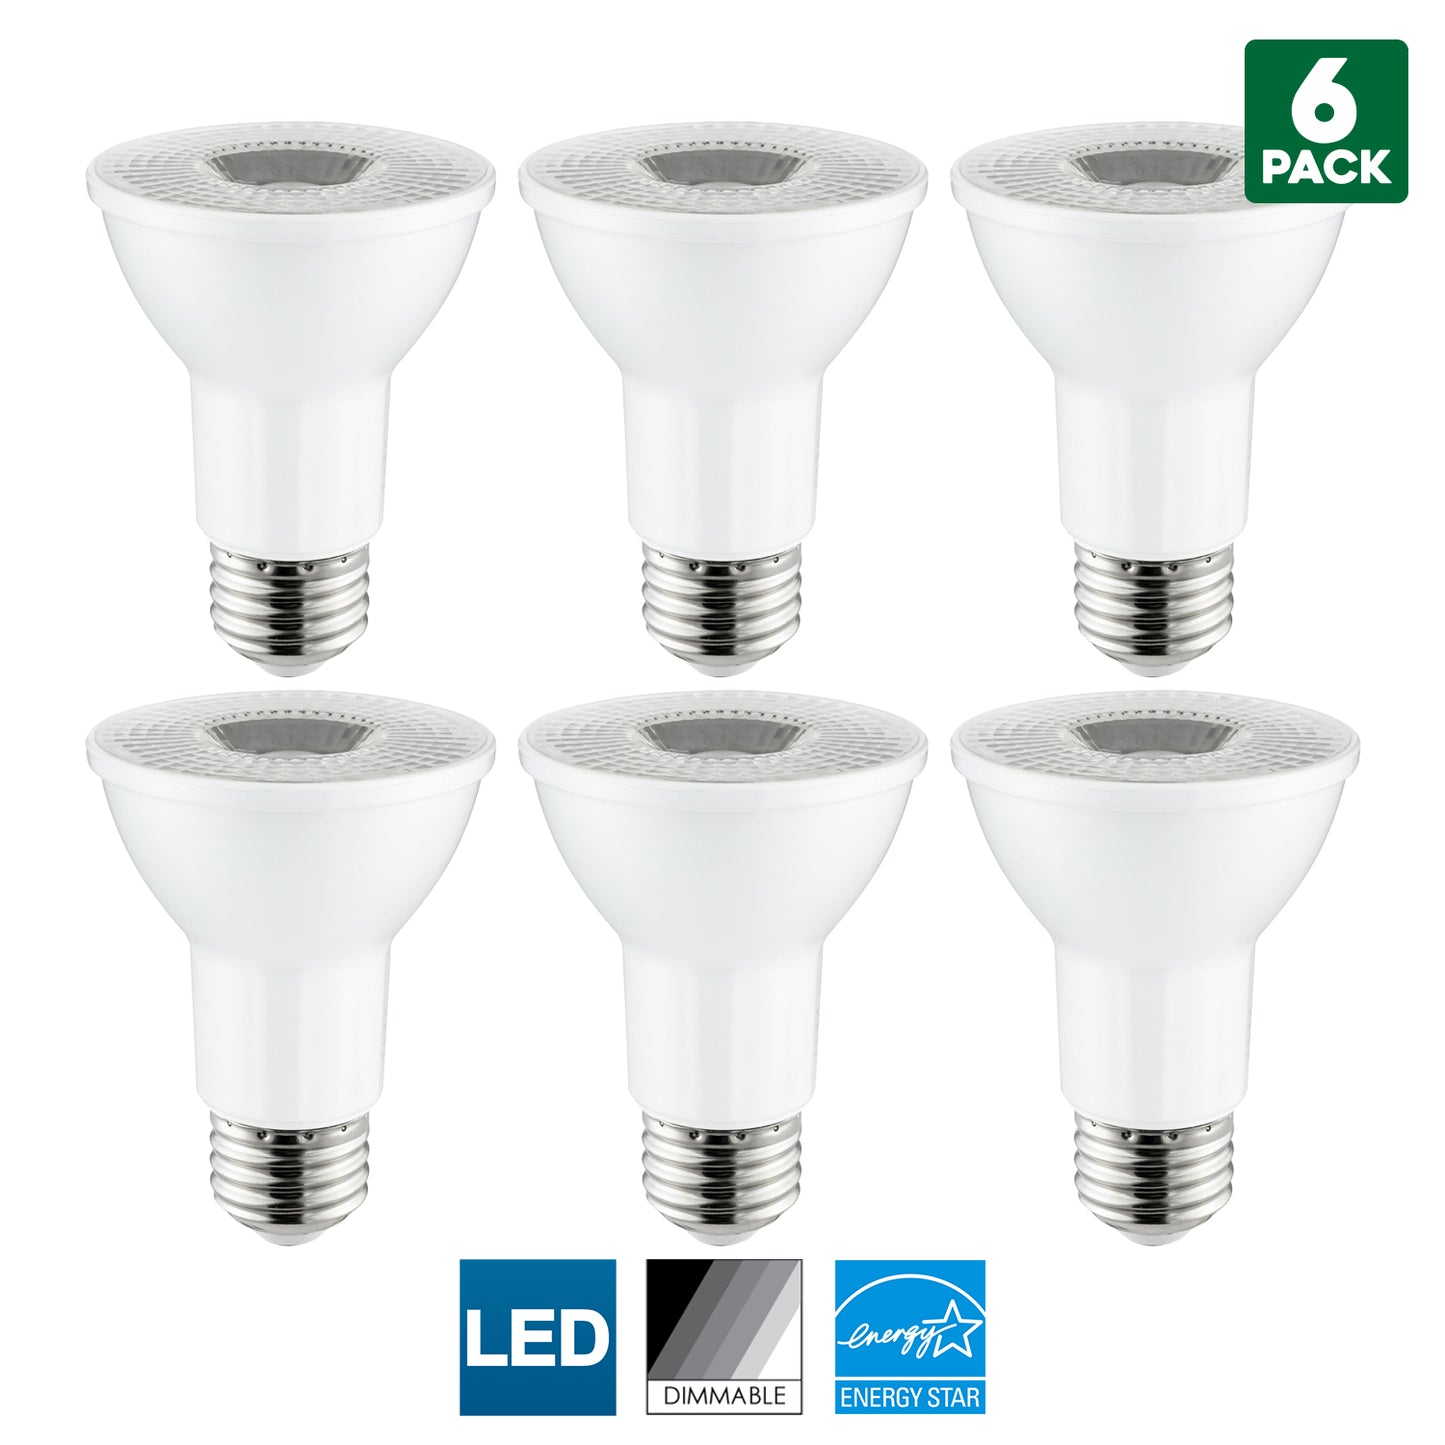 Sunlite LED PAR20 Reflector Bulb, 6 Watt (50 Watt Equivalent), Dimmable, 4000K Cool White, 450 Lumens, Medium (E26) Base, Energy Star Certified